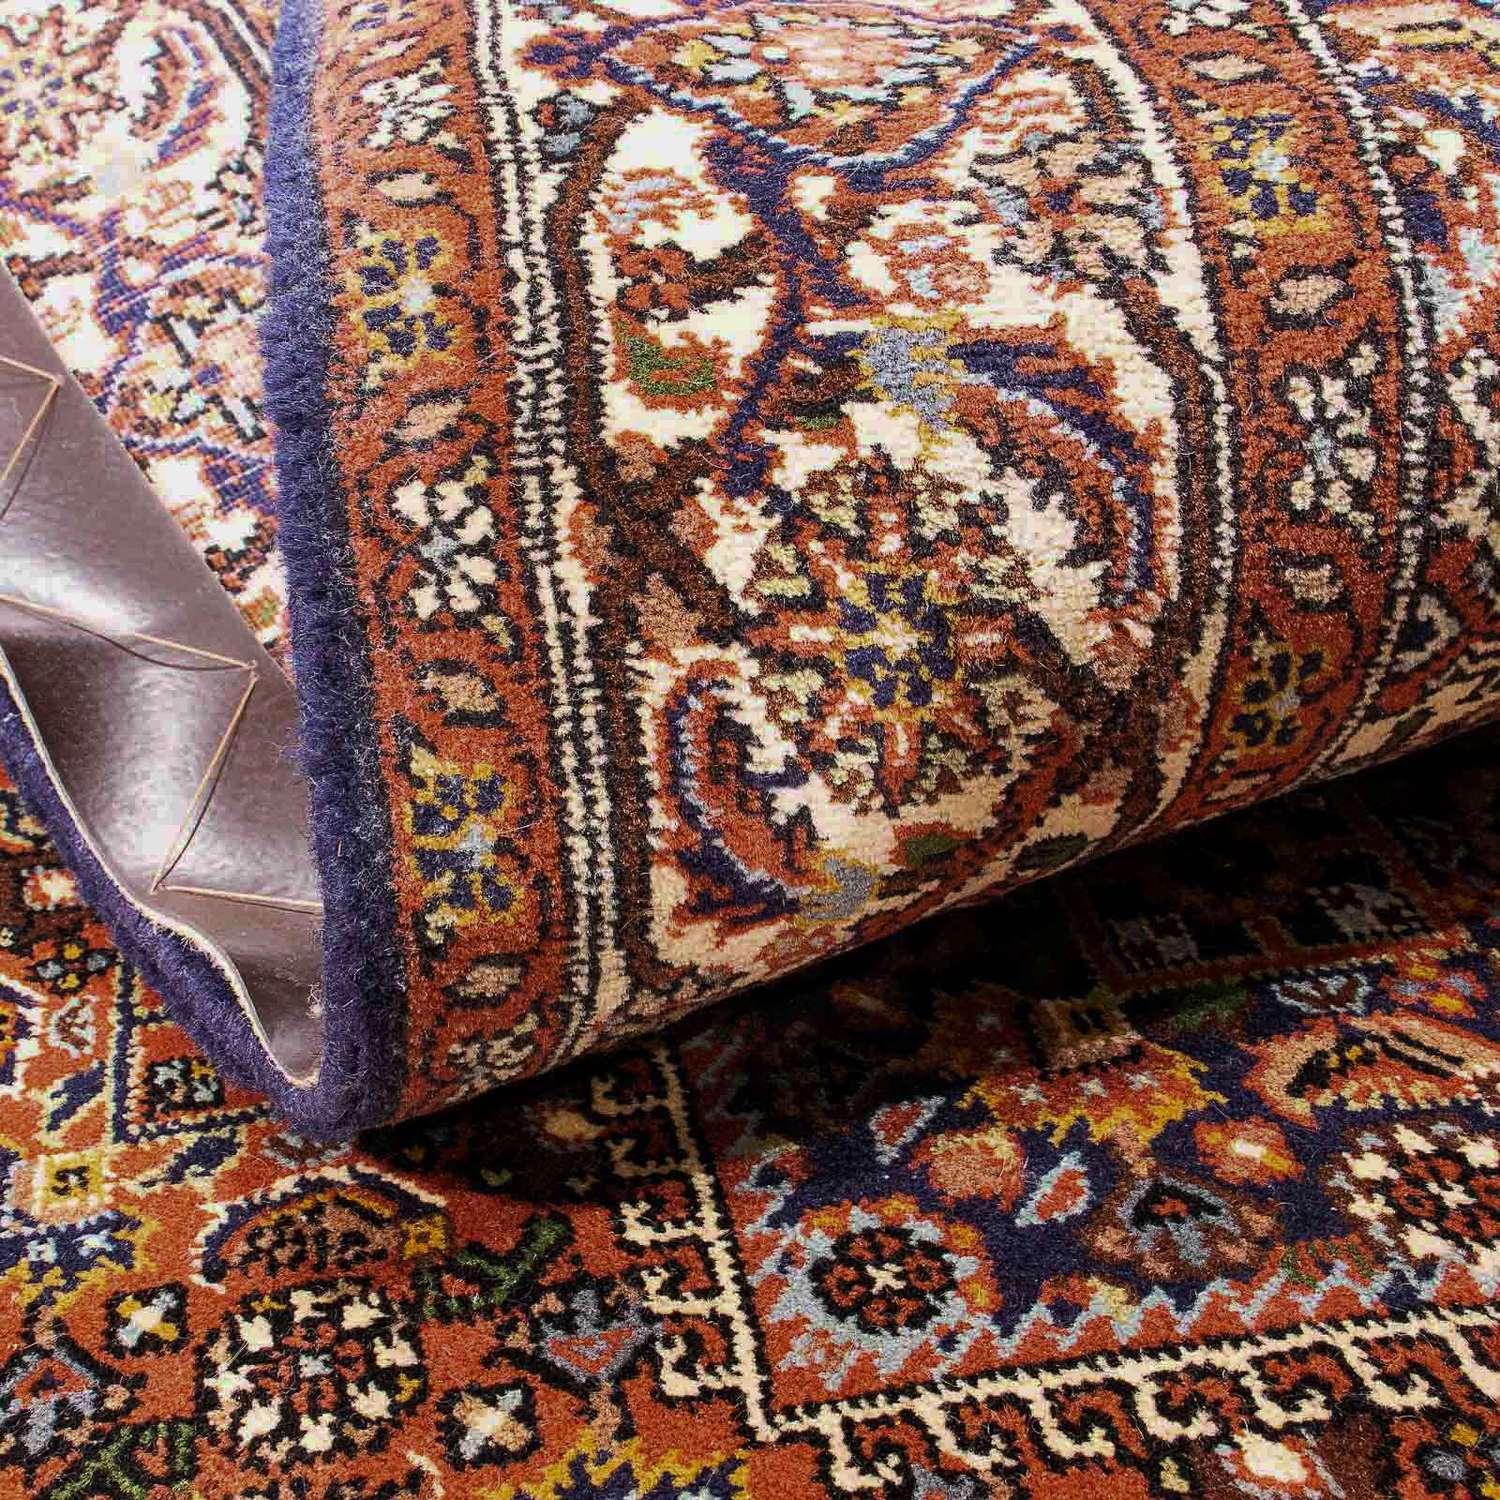 Perzisch tapijt - Bijar - 173 x 112 cm - roze